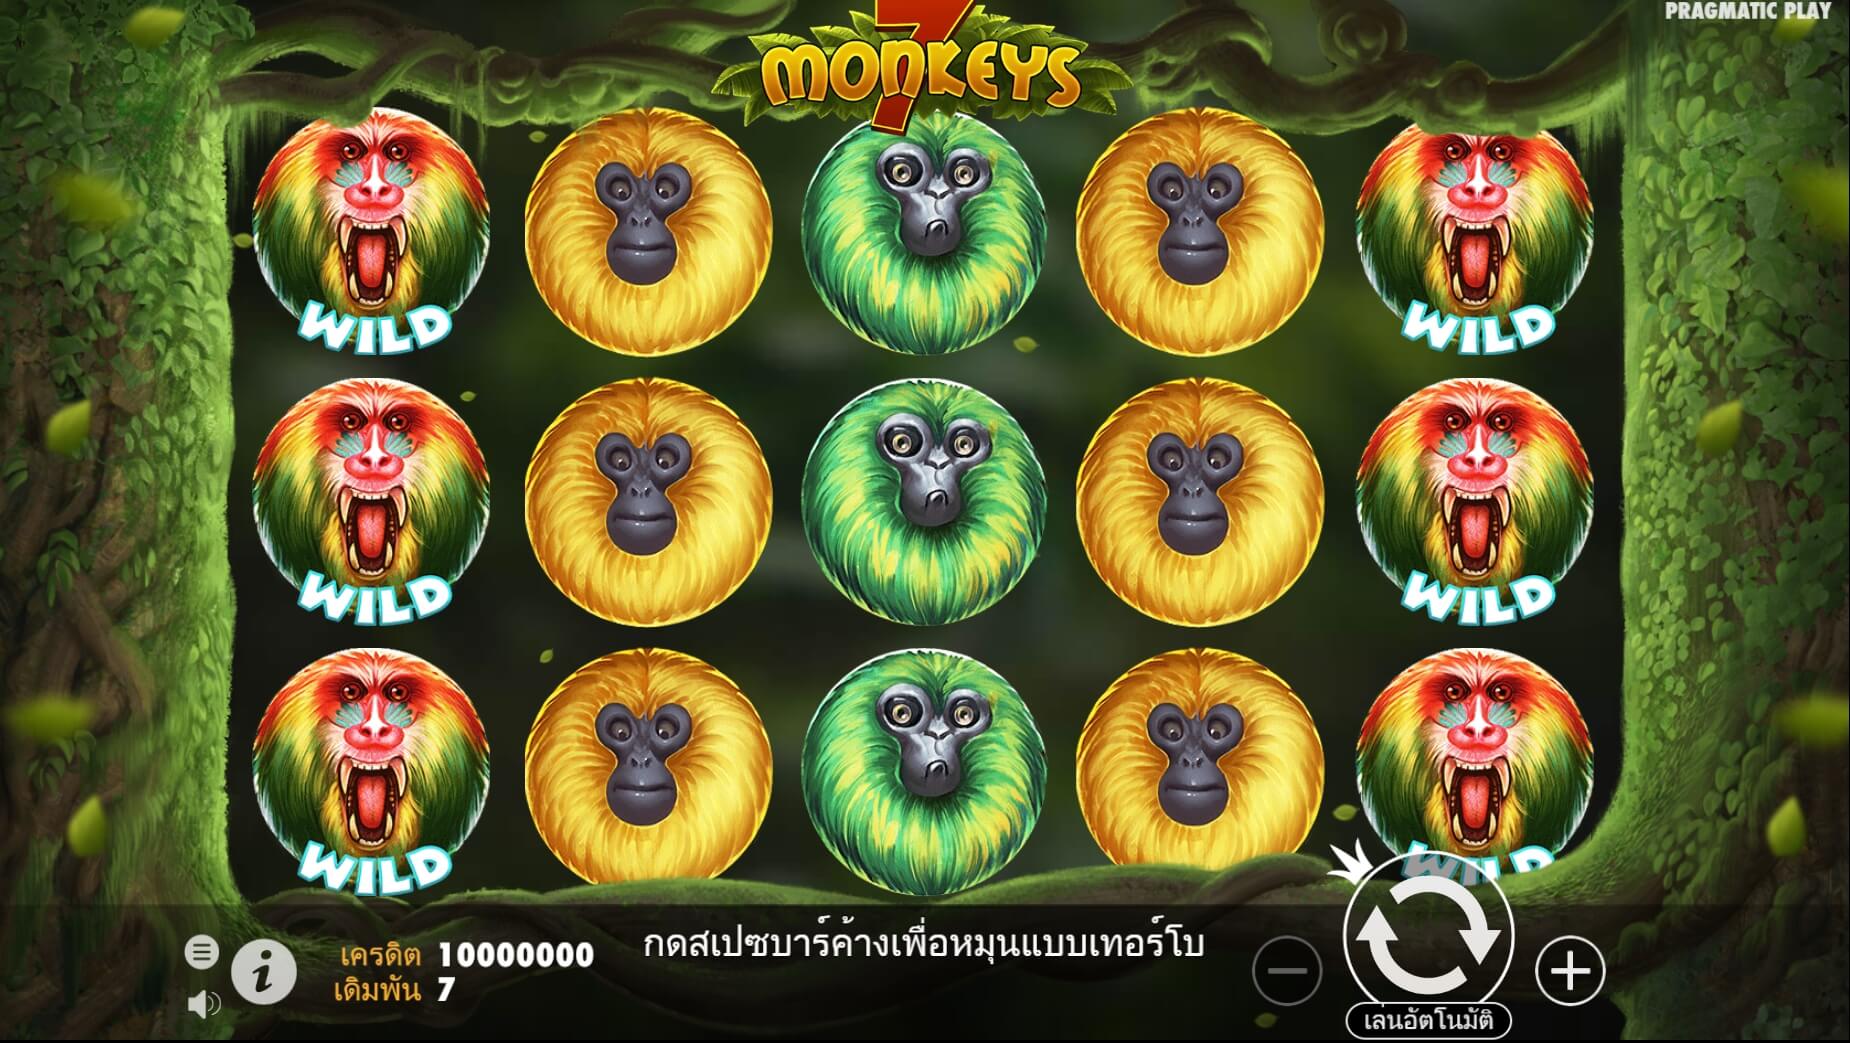 pragmatic play ฟรีเครดิต 7 Monkeys เครดิตฟรี 300